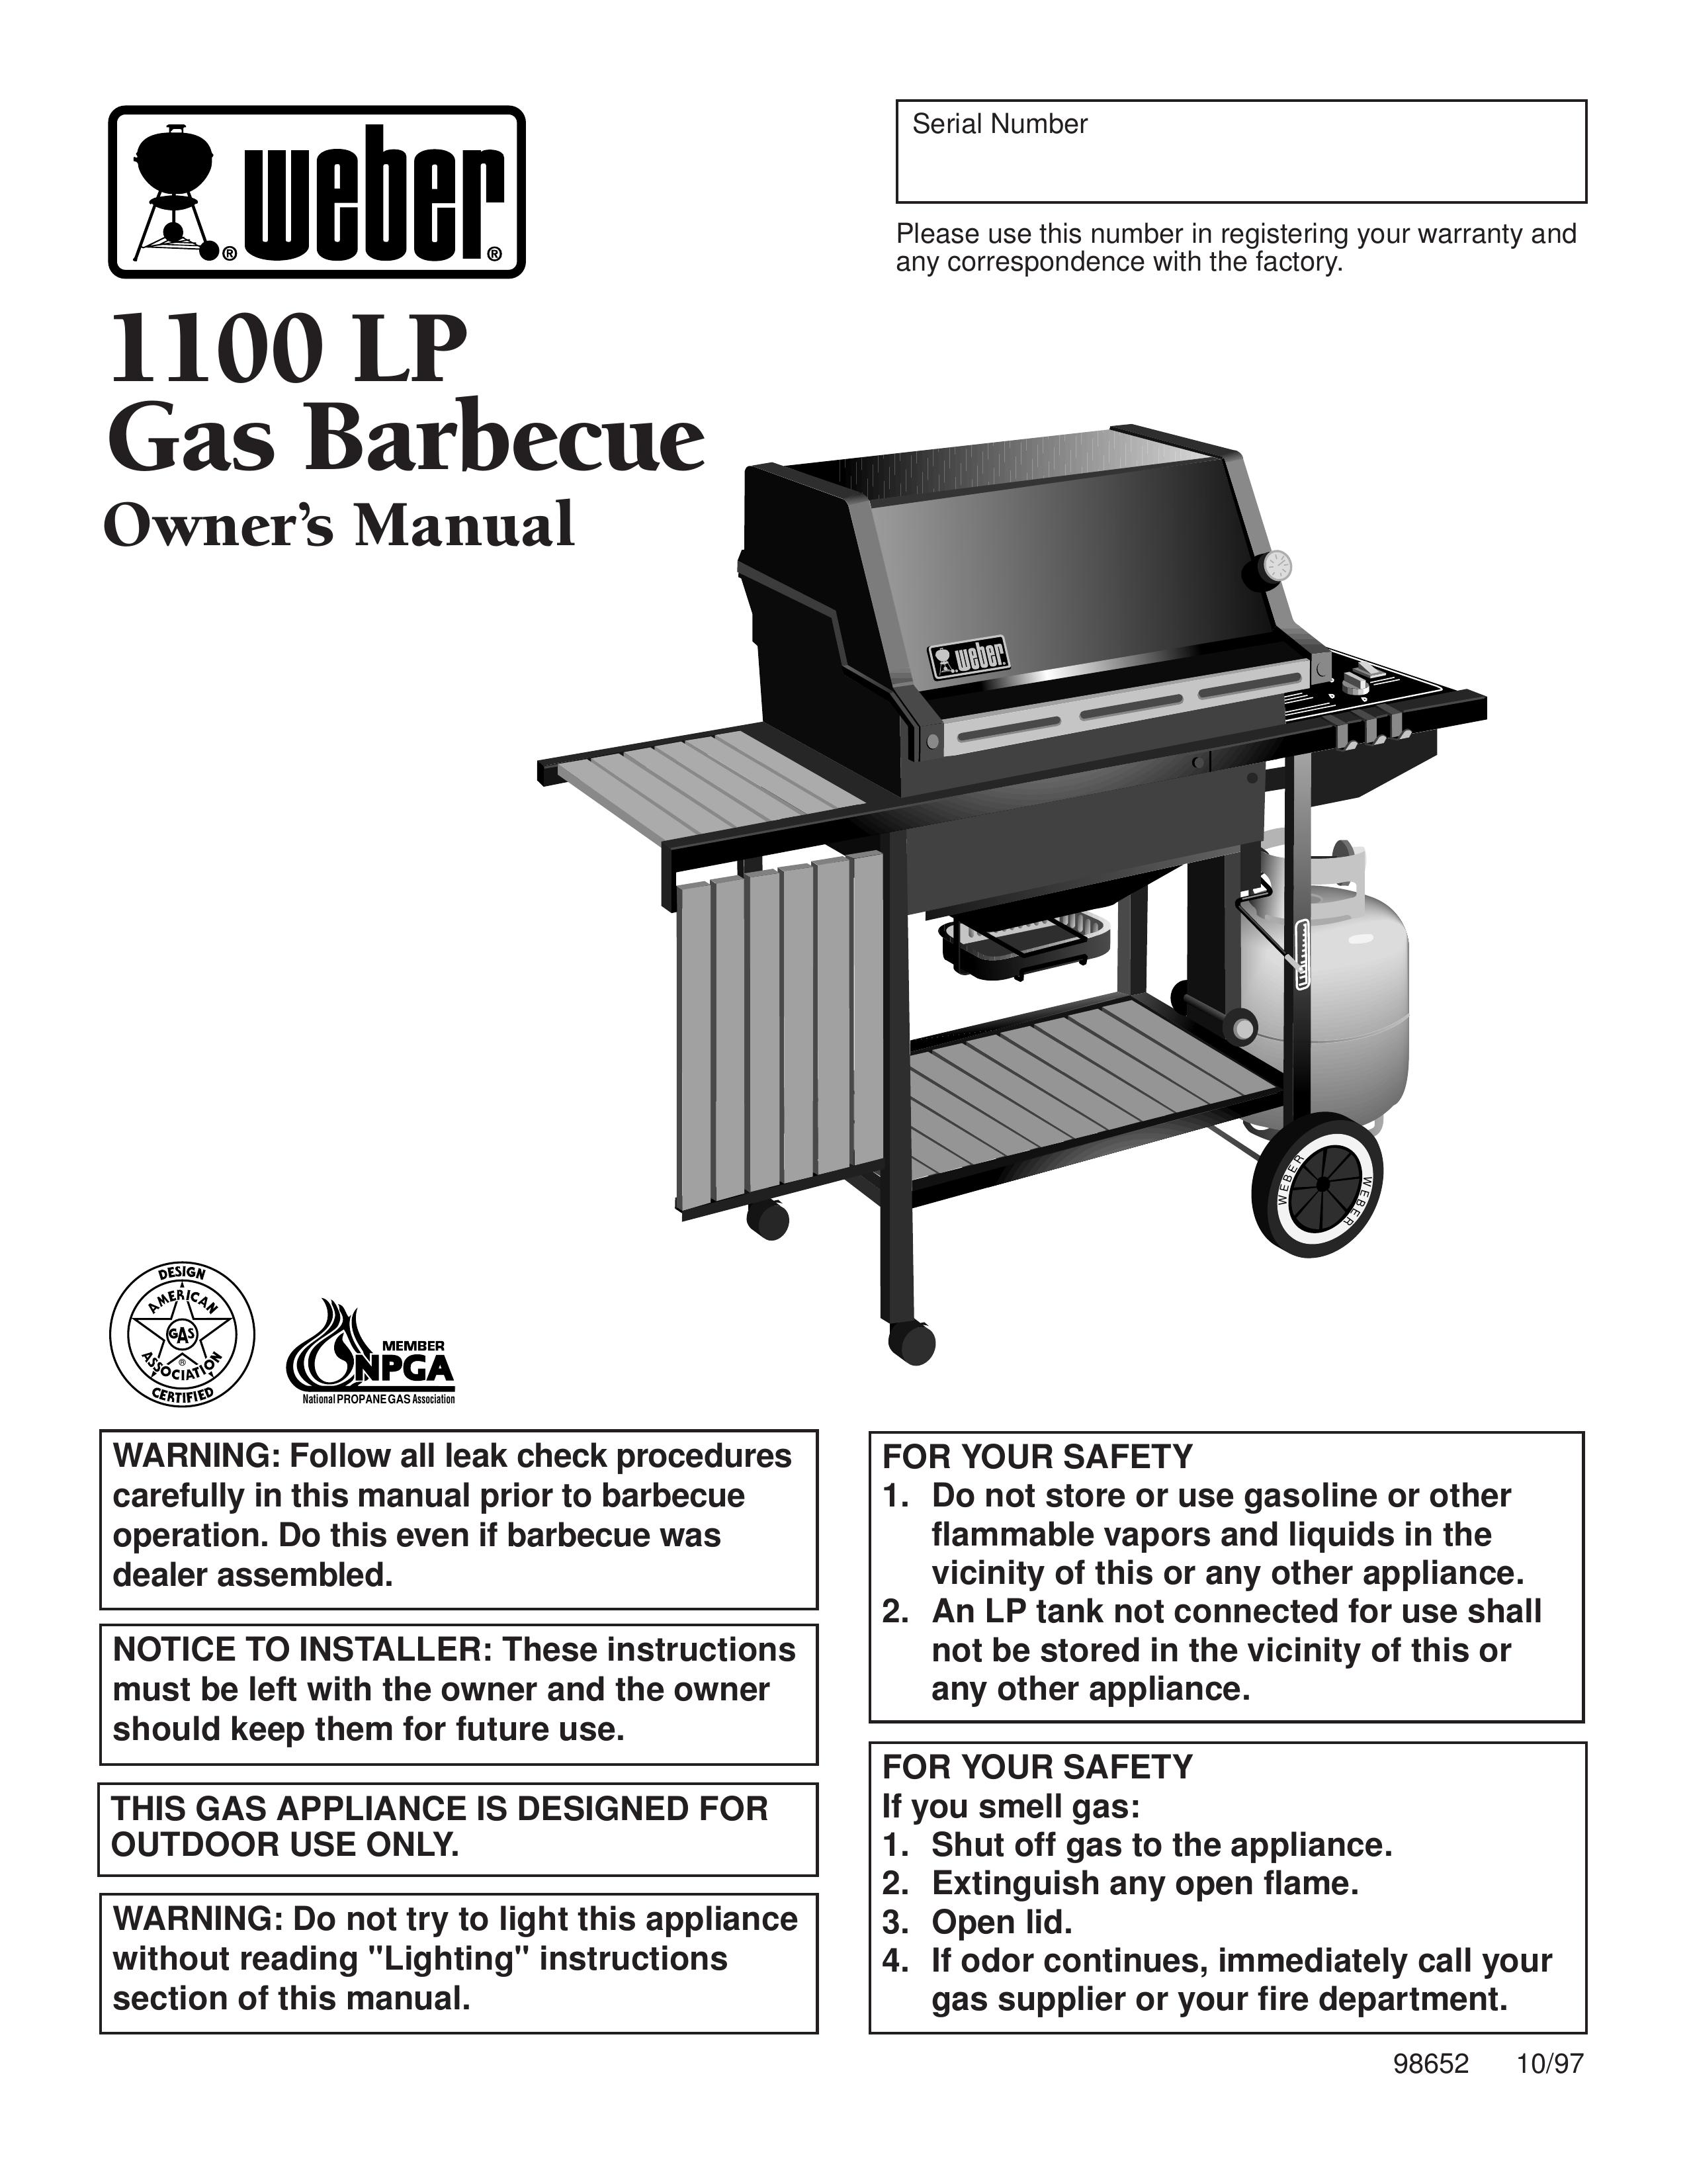 Weber 1100 LP Washer User Manual